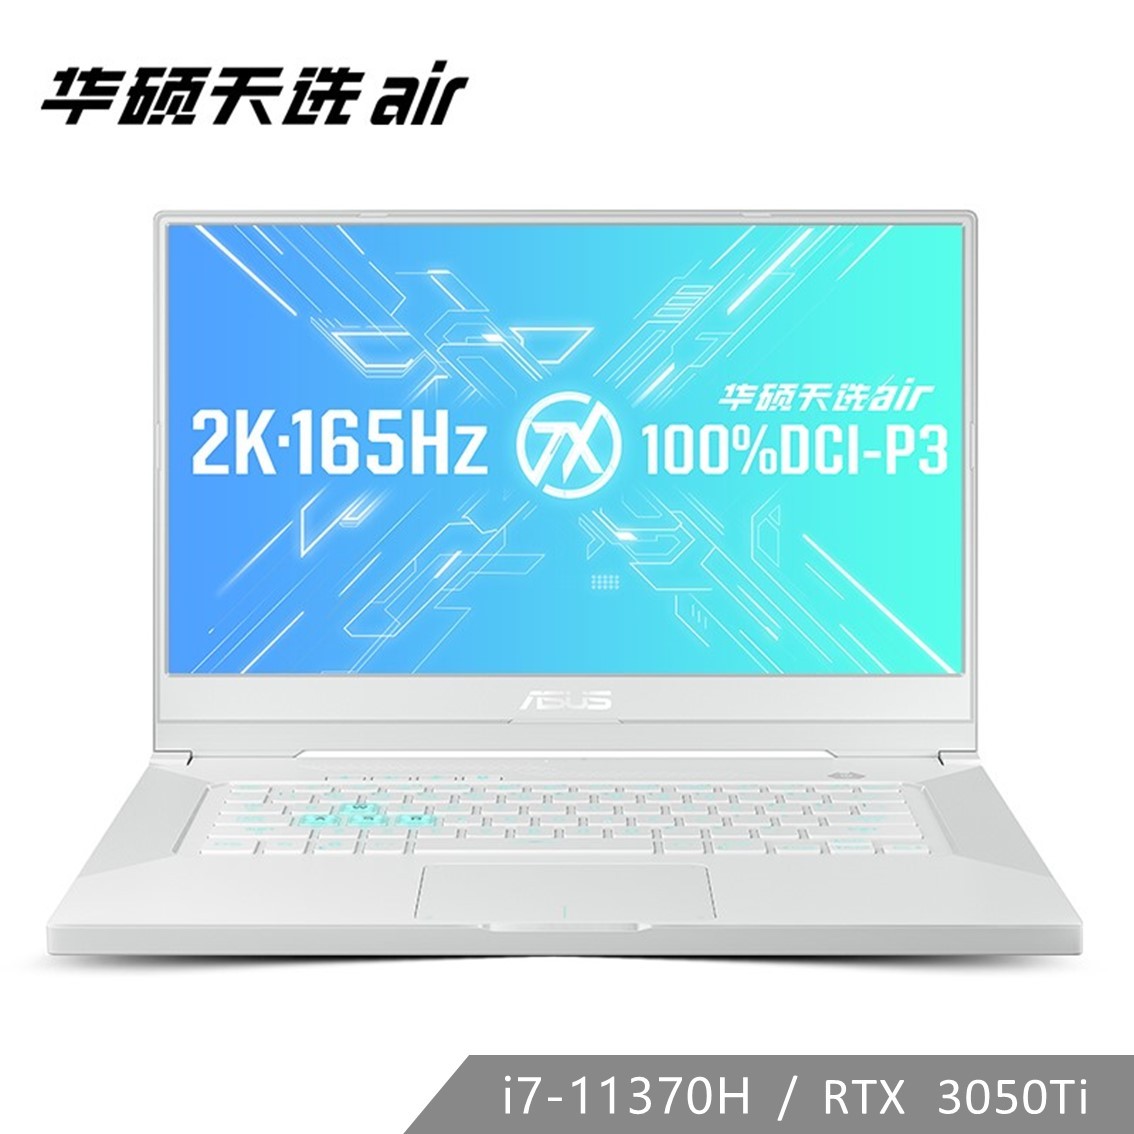 天选air 月耀白 11代i7 RTX3050Ti 165Hz 2K全能笔记本电脑-15.6英寸（Win10 Home/i7-11370H/16GB/512G SSD/RTX3050Ti 4G）